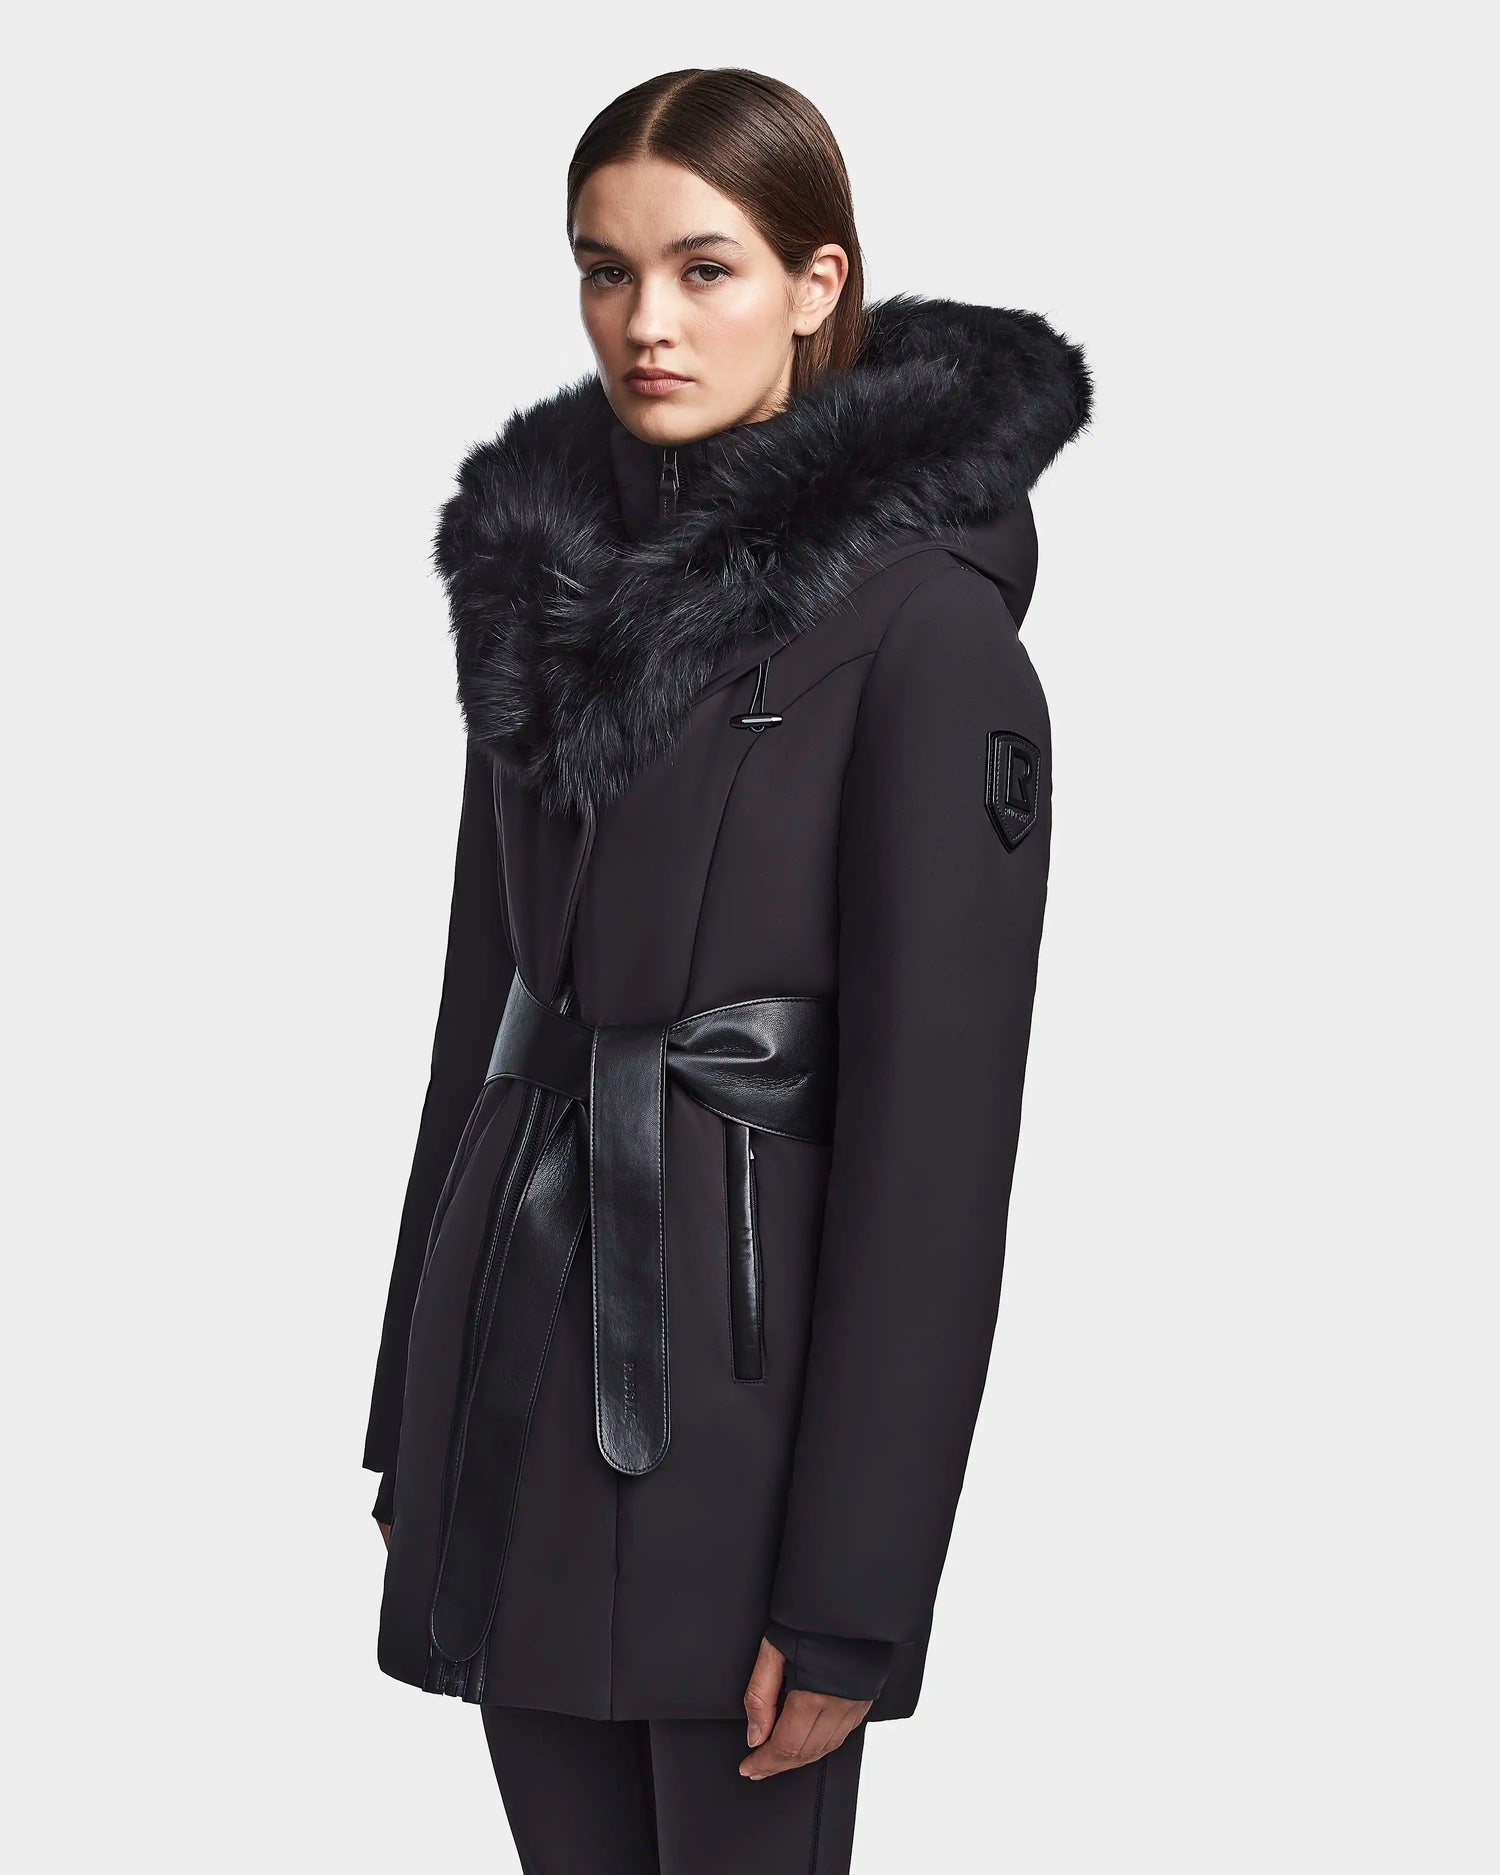 Women's parka jacket MODA black | RUDSAK – Rudsak